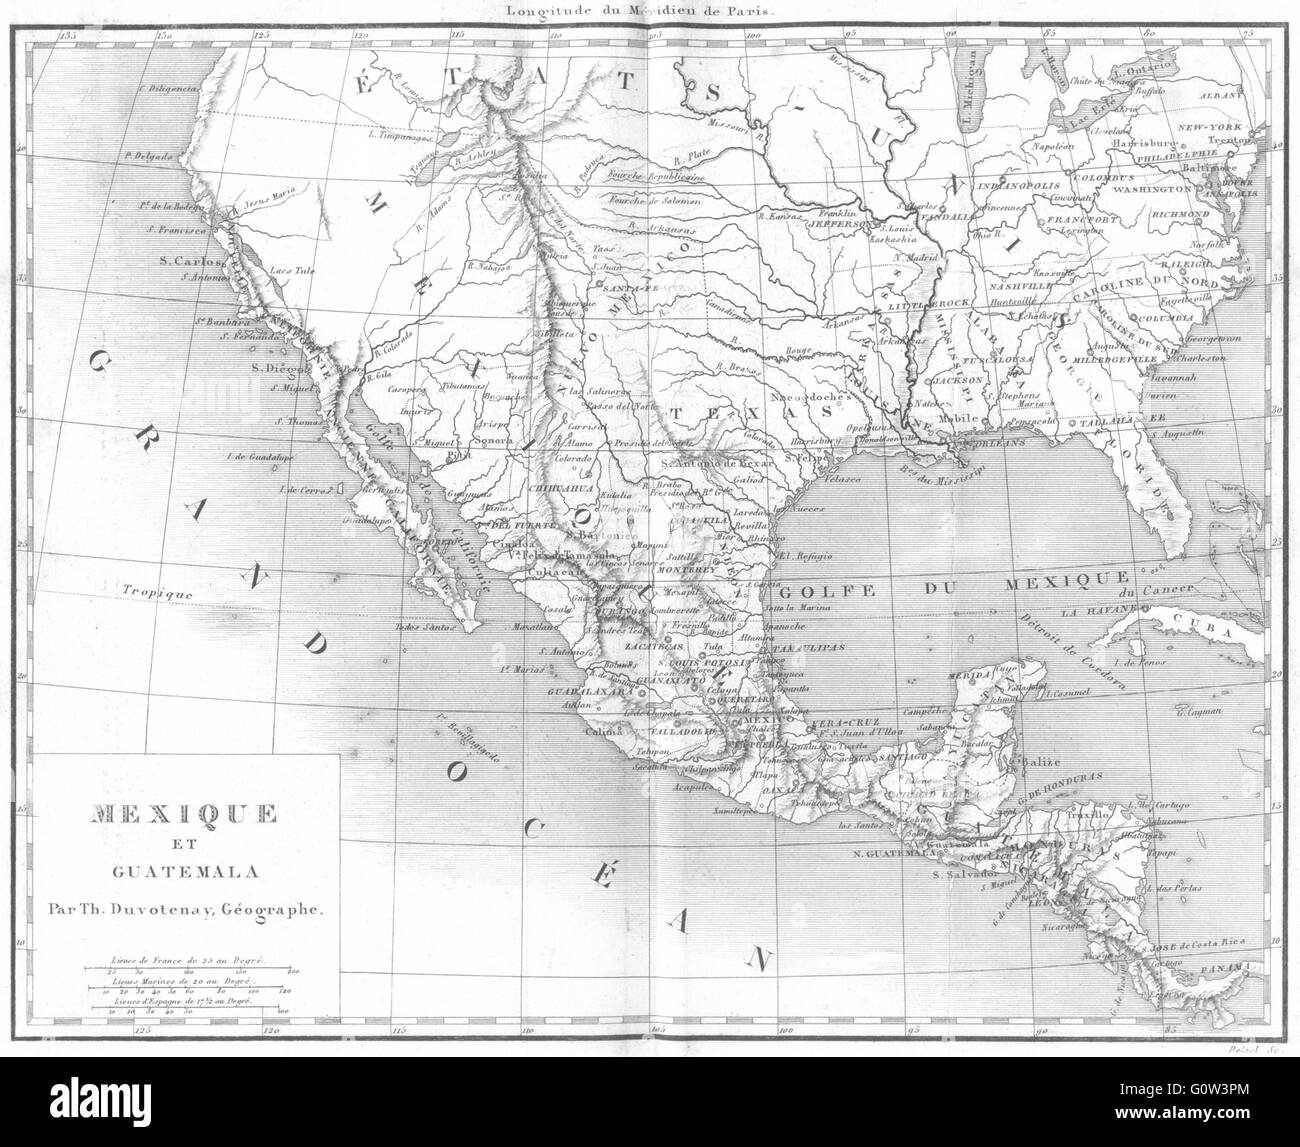 MEXICO: Amerique: Mexique et Guatemala, 1875 antique map Stock Photo